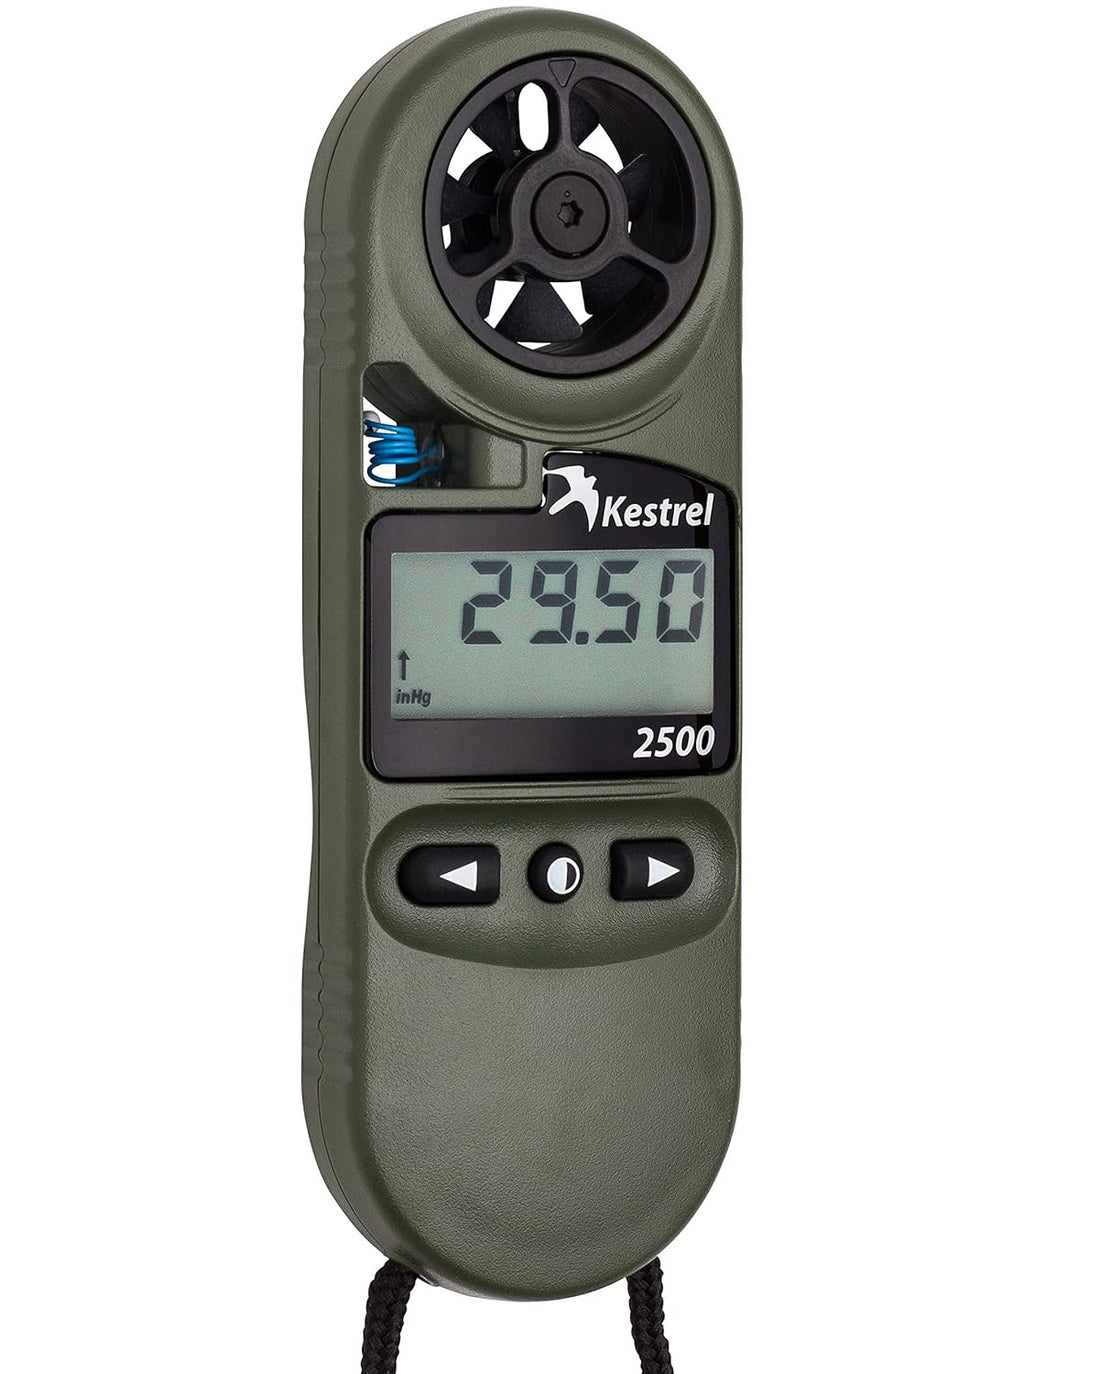 Kestrel 2500 Pocket Weather Meter - Olive Drab Night Vision